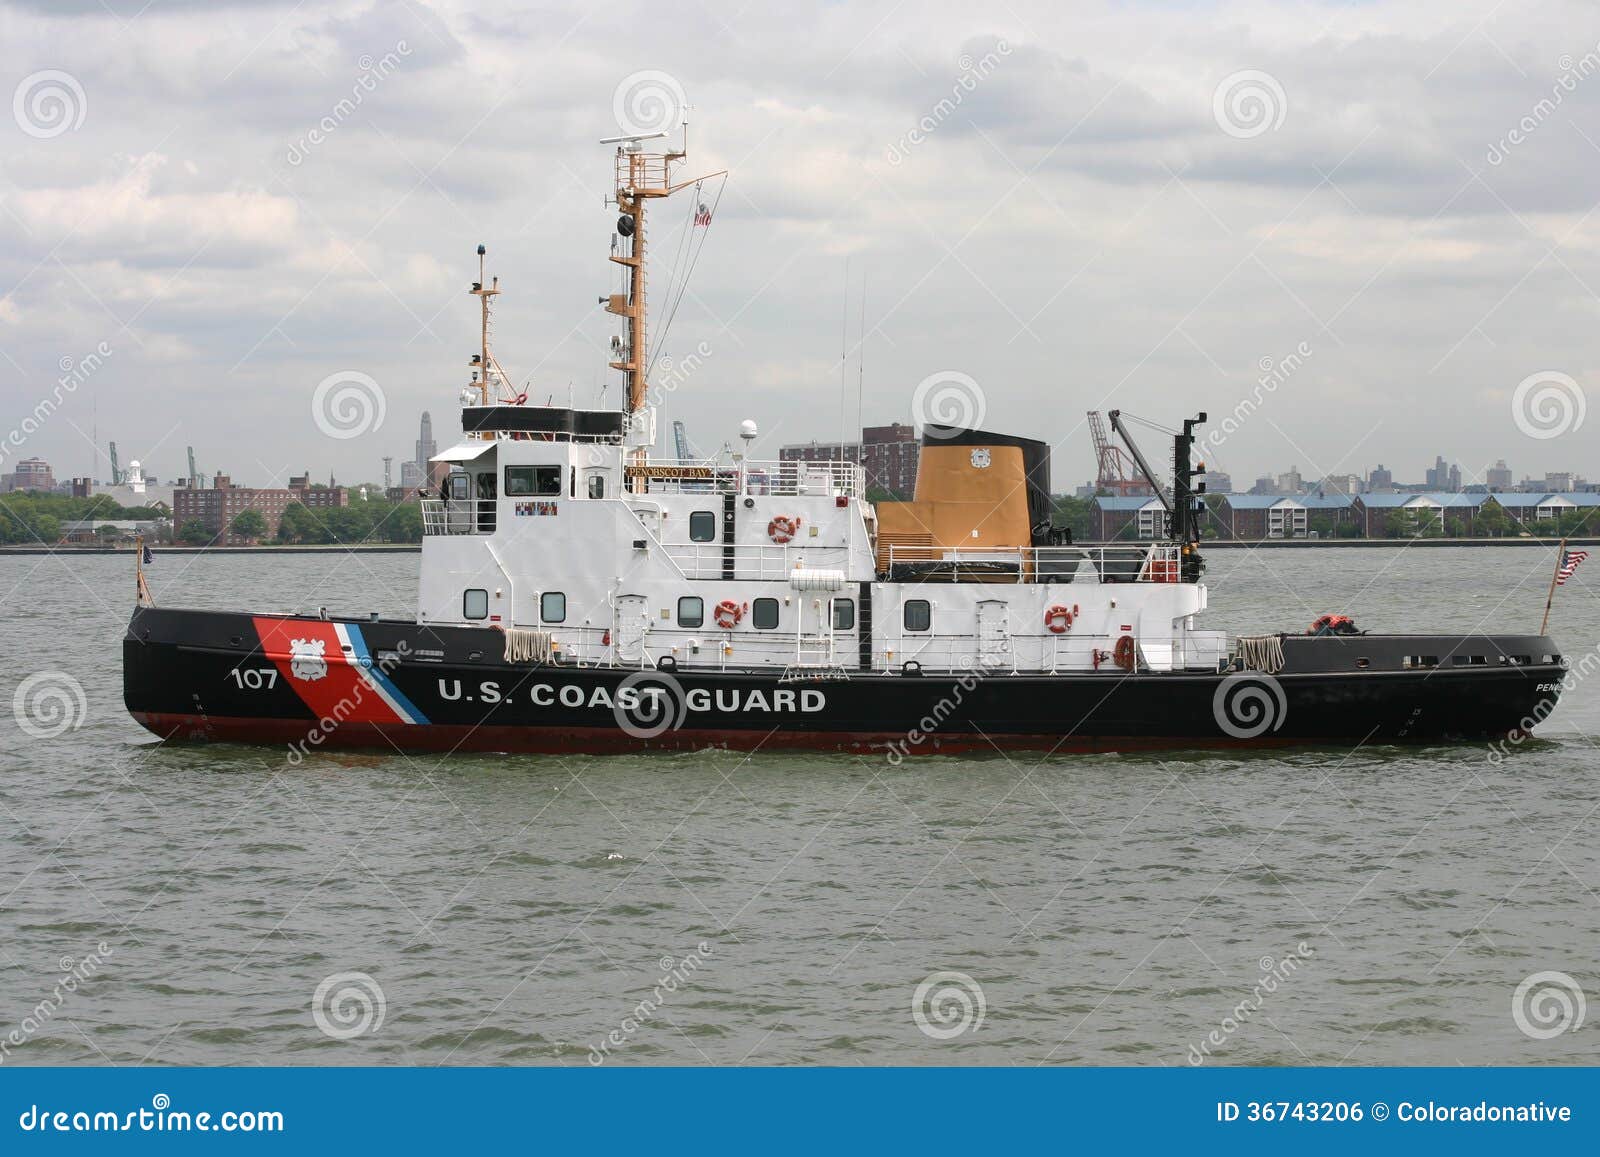 Coast Guard Tug Boat editorial photo. Image of states 